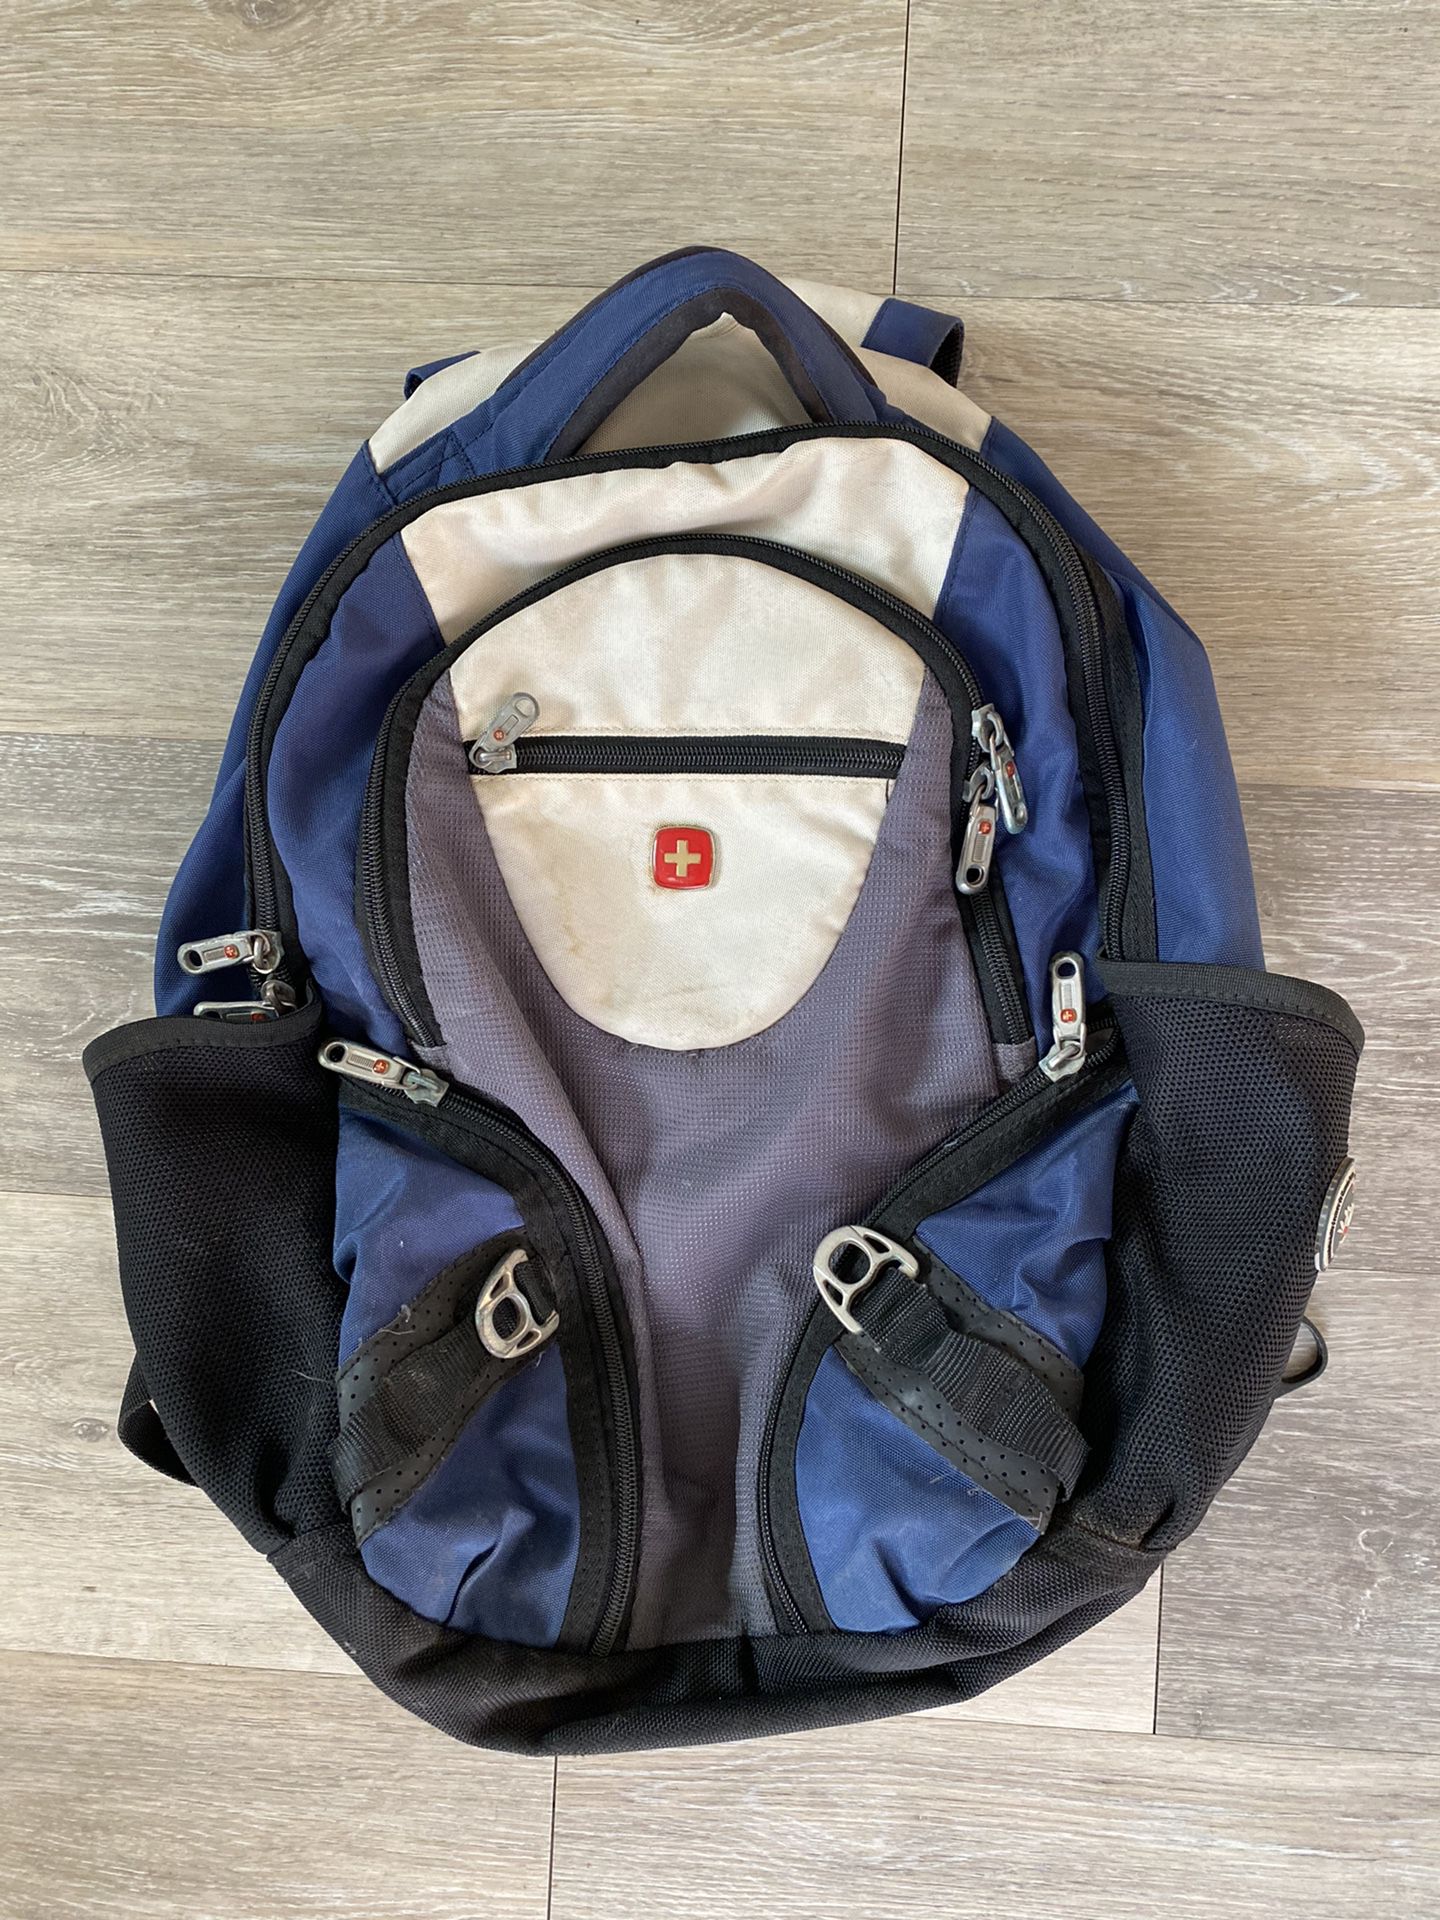 Backpack, Swiss army backpack, Book bag